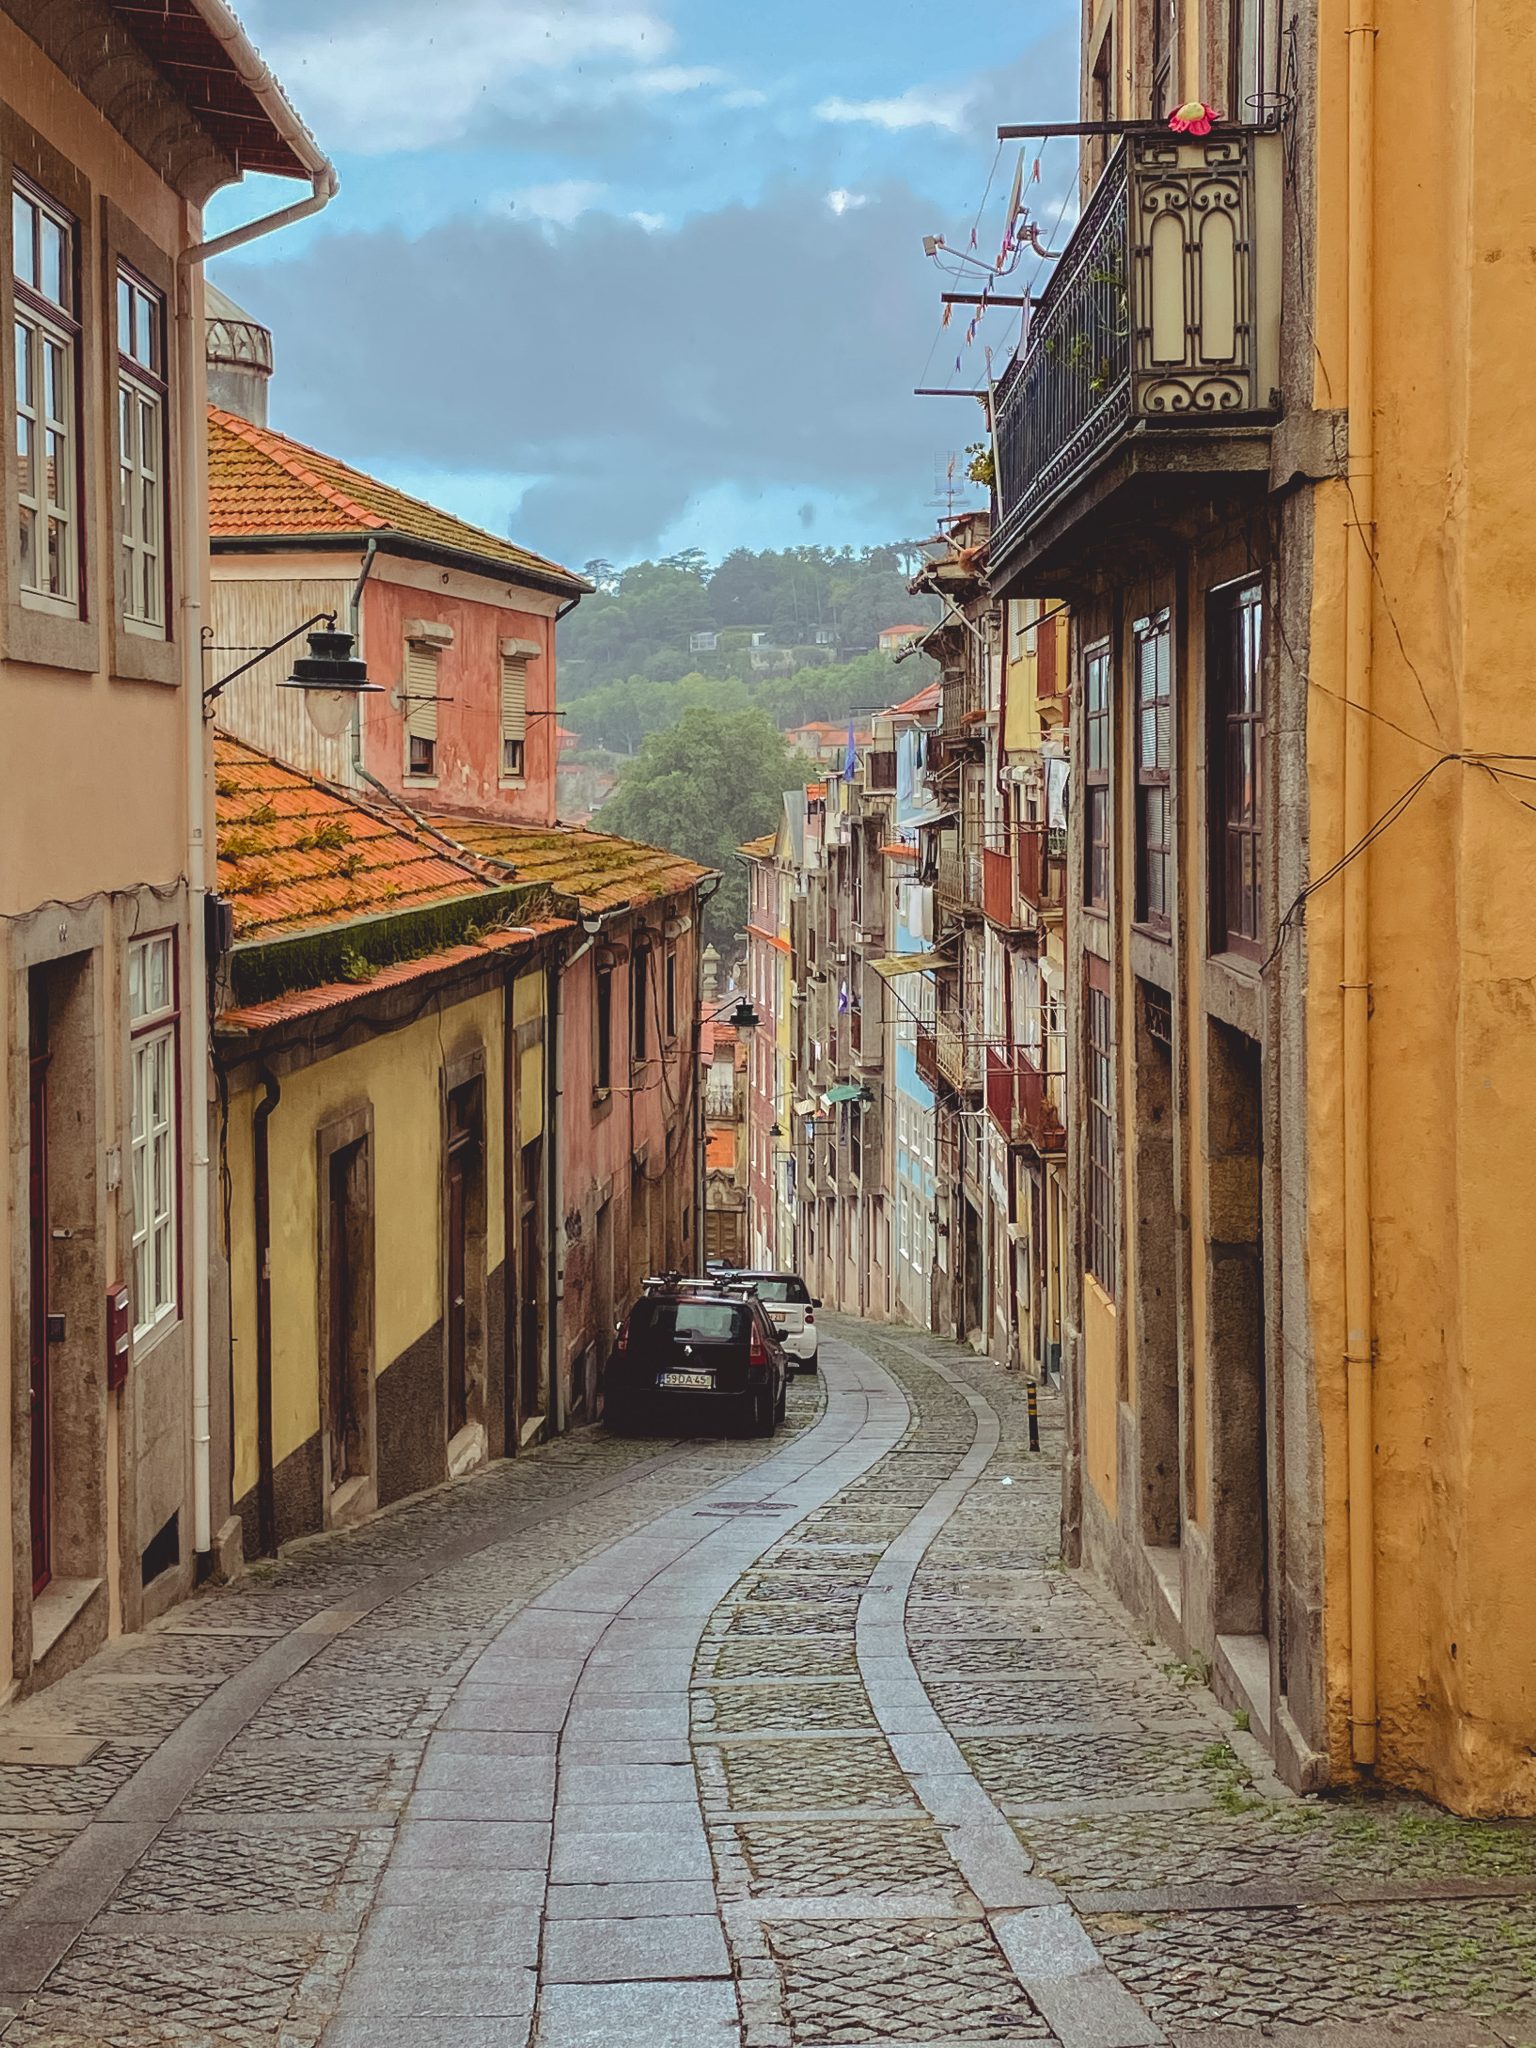 Winding, cobblestone street in Porto, Portugal